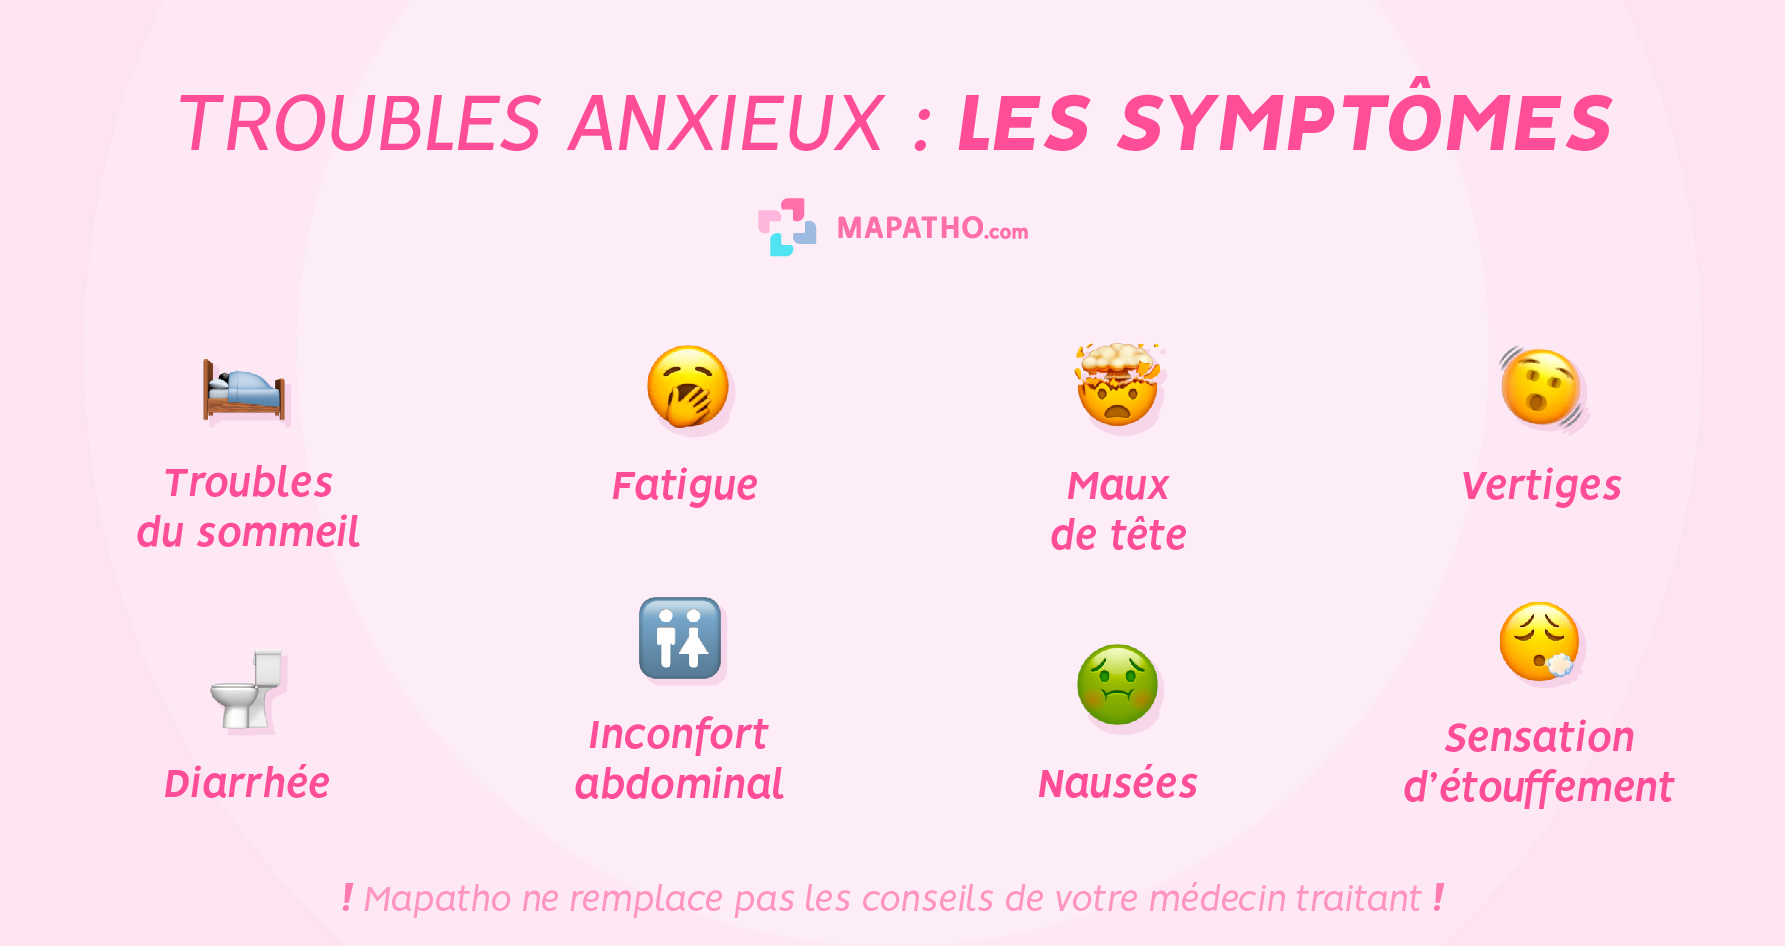 Les symptômes des troubles anxieux